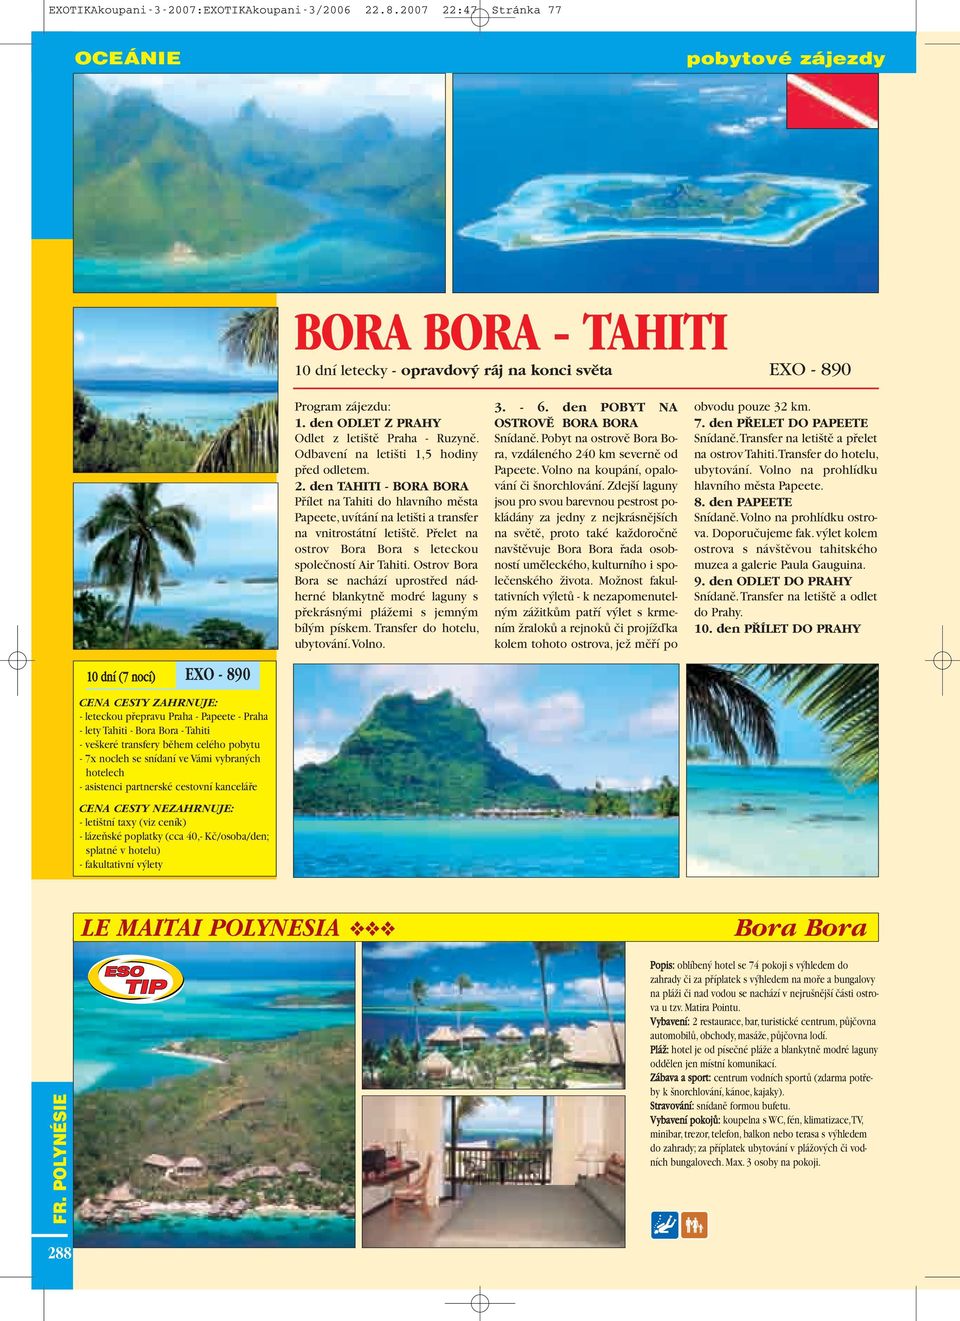 Pfielet na ostrov s leteckou spoleãností Air Tahiti. Ostrov Bora Bora se nachází uprostfied nád - herné blankytnû modré laguny s pfiekrásn mi pláïemi s jemn m bíl m pískem.